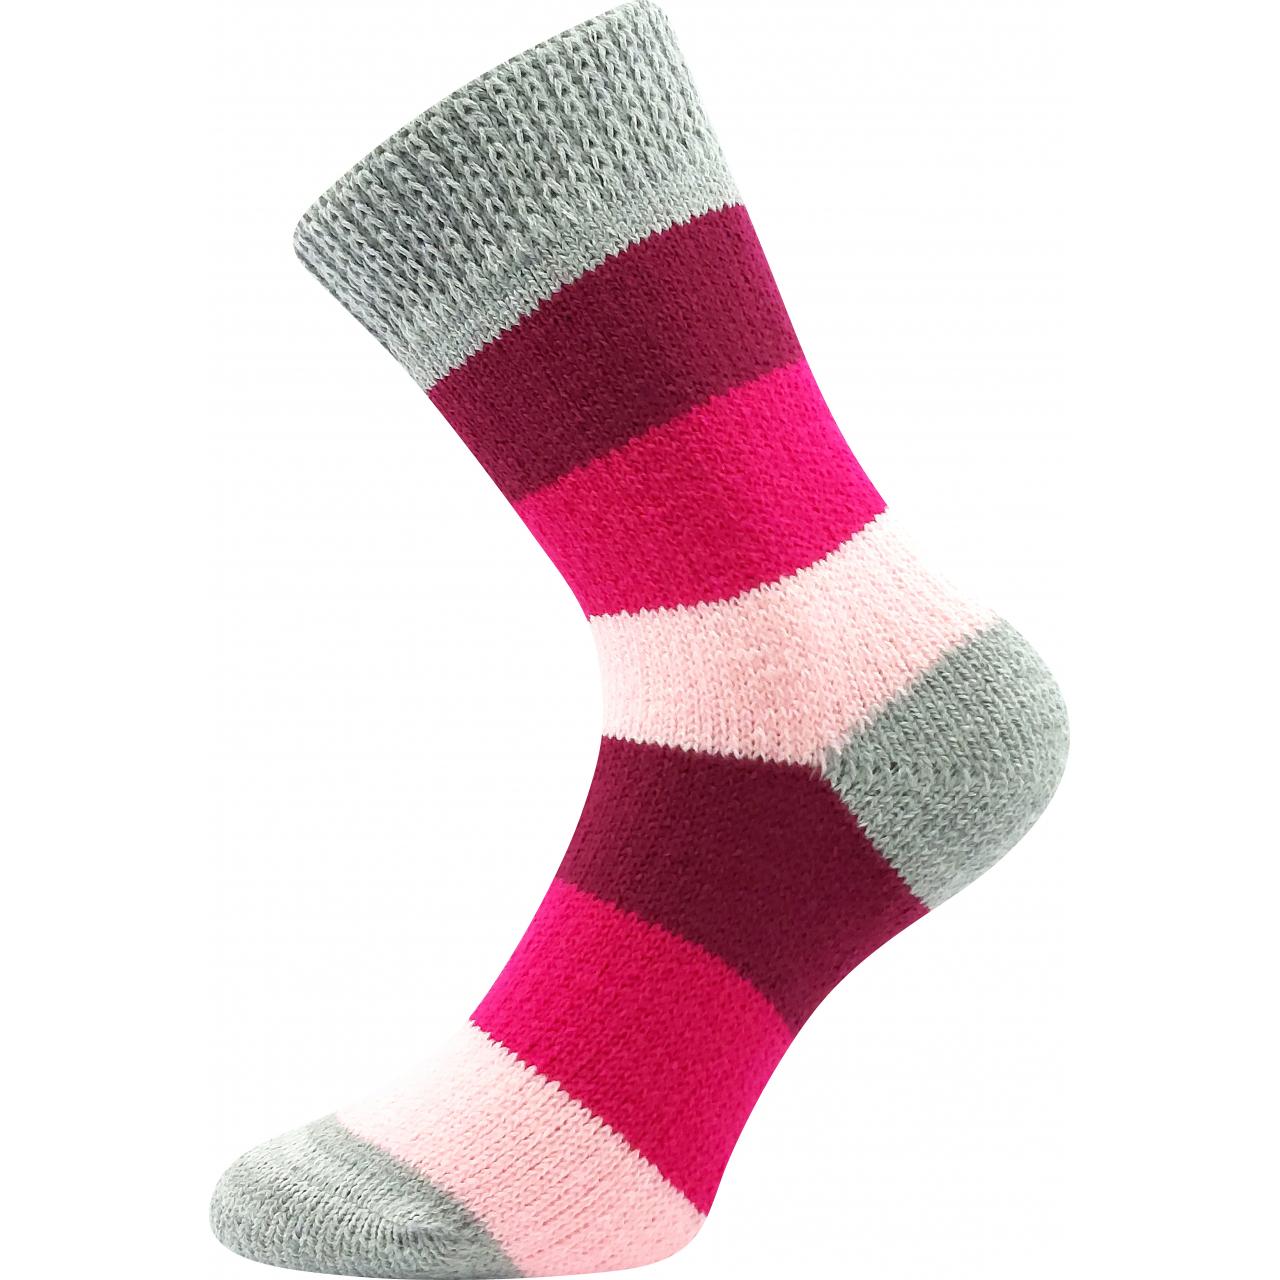 Ponožky spací unisex Boma Spací Pruh - růžové-šedé, 39-42